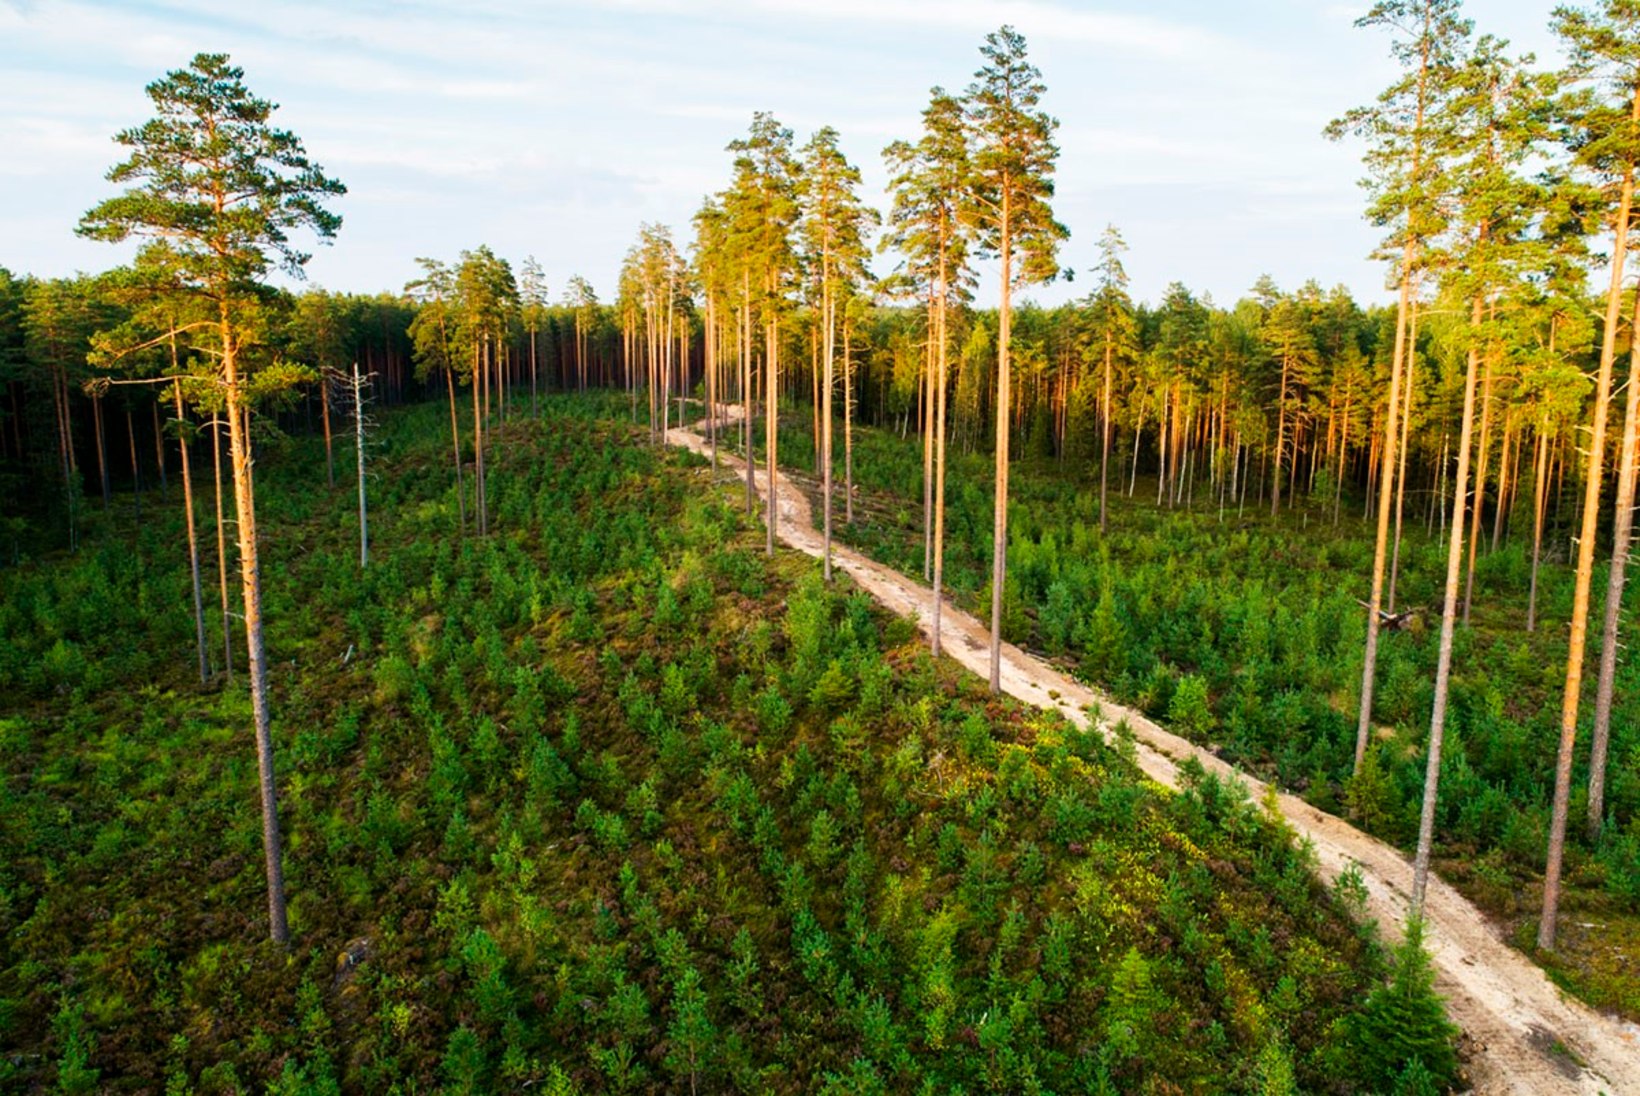 Kas Eestis on metsa liiga vähe, palju või piisavalt?